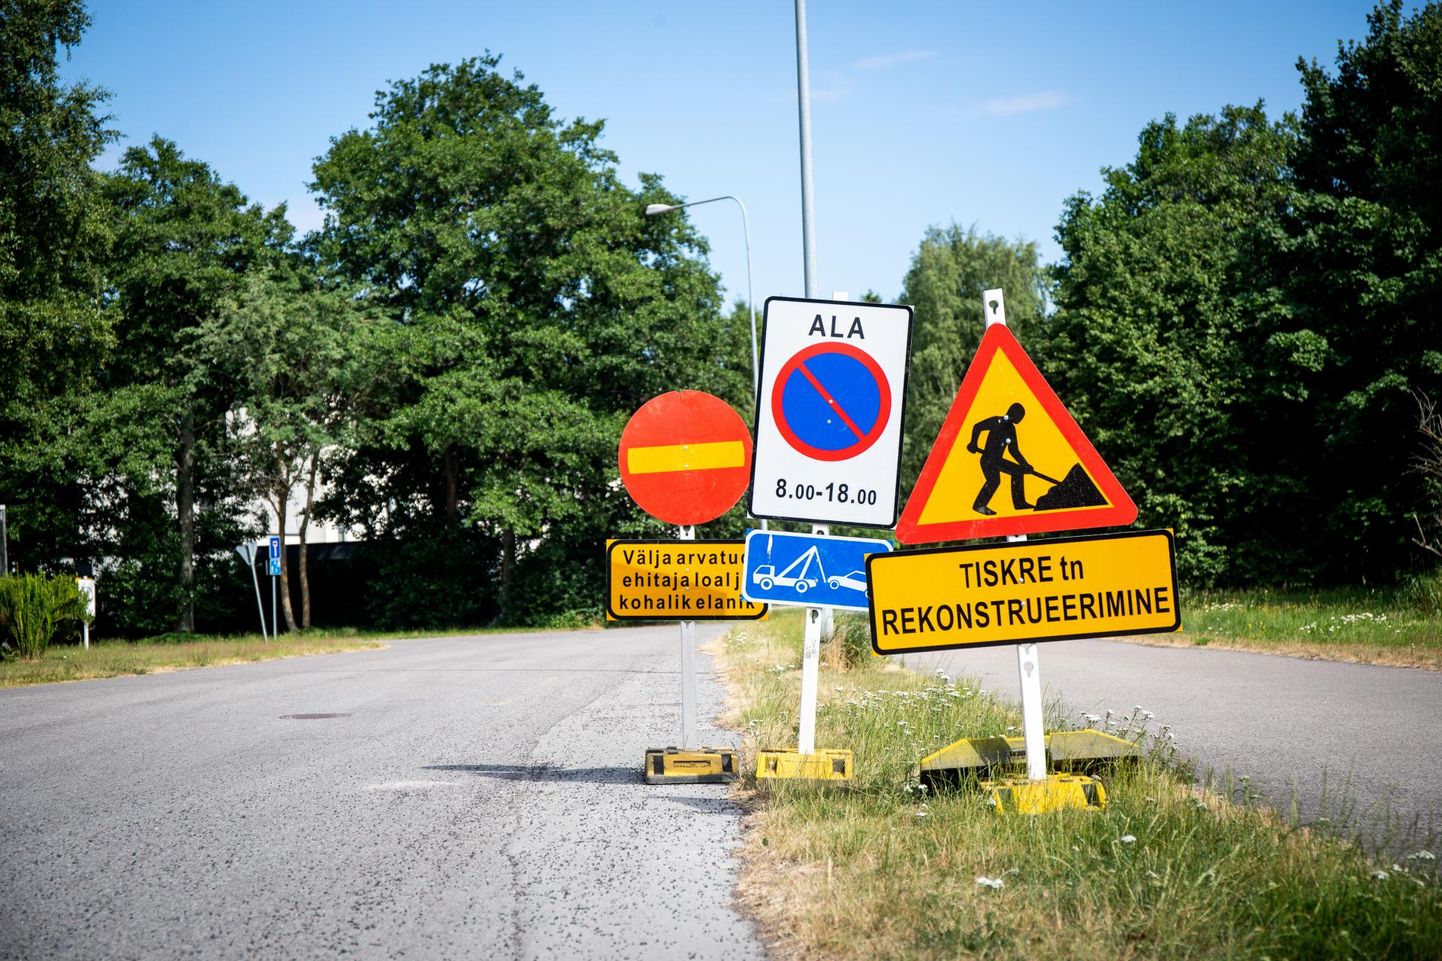 Alates eilsest on võõrastel Tiskre teele sissesõit keelatud ning kohe algab tänava rekonstrueerimine. 